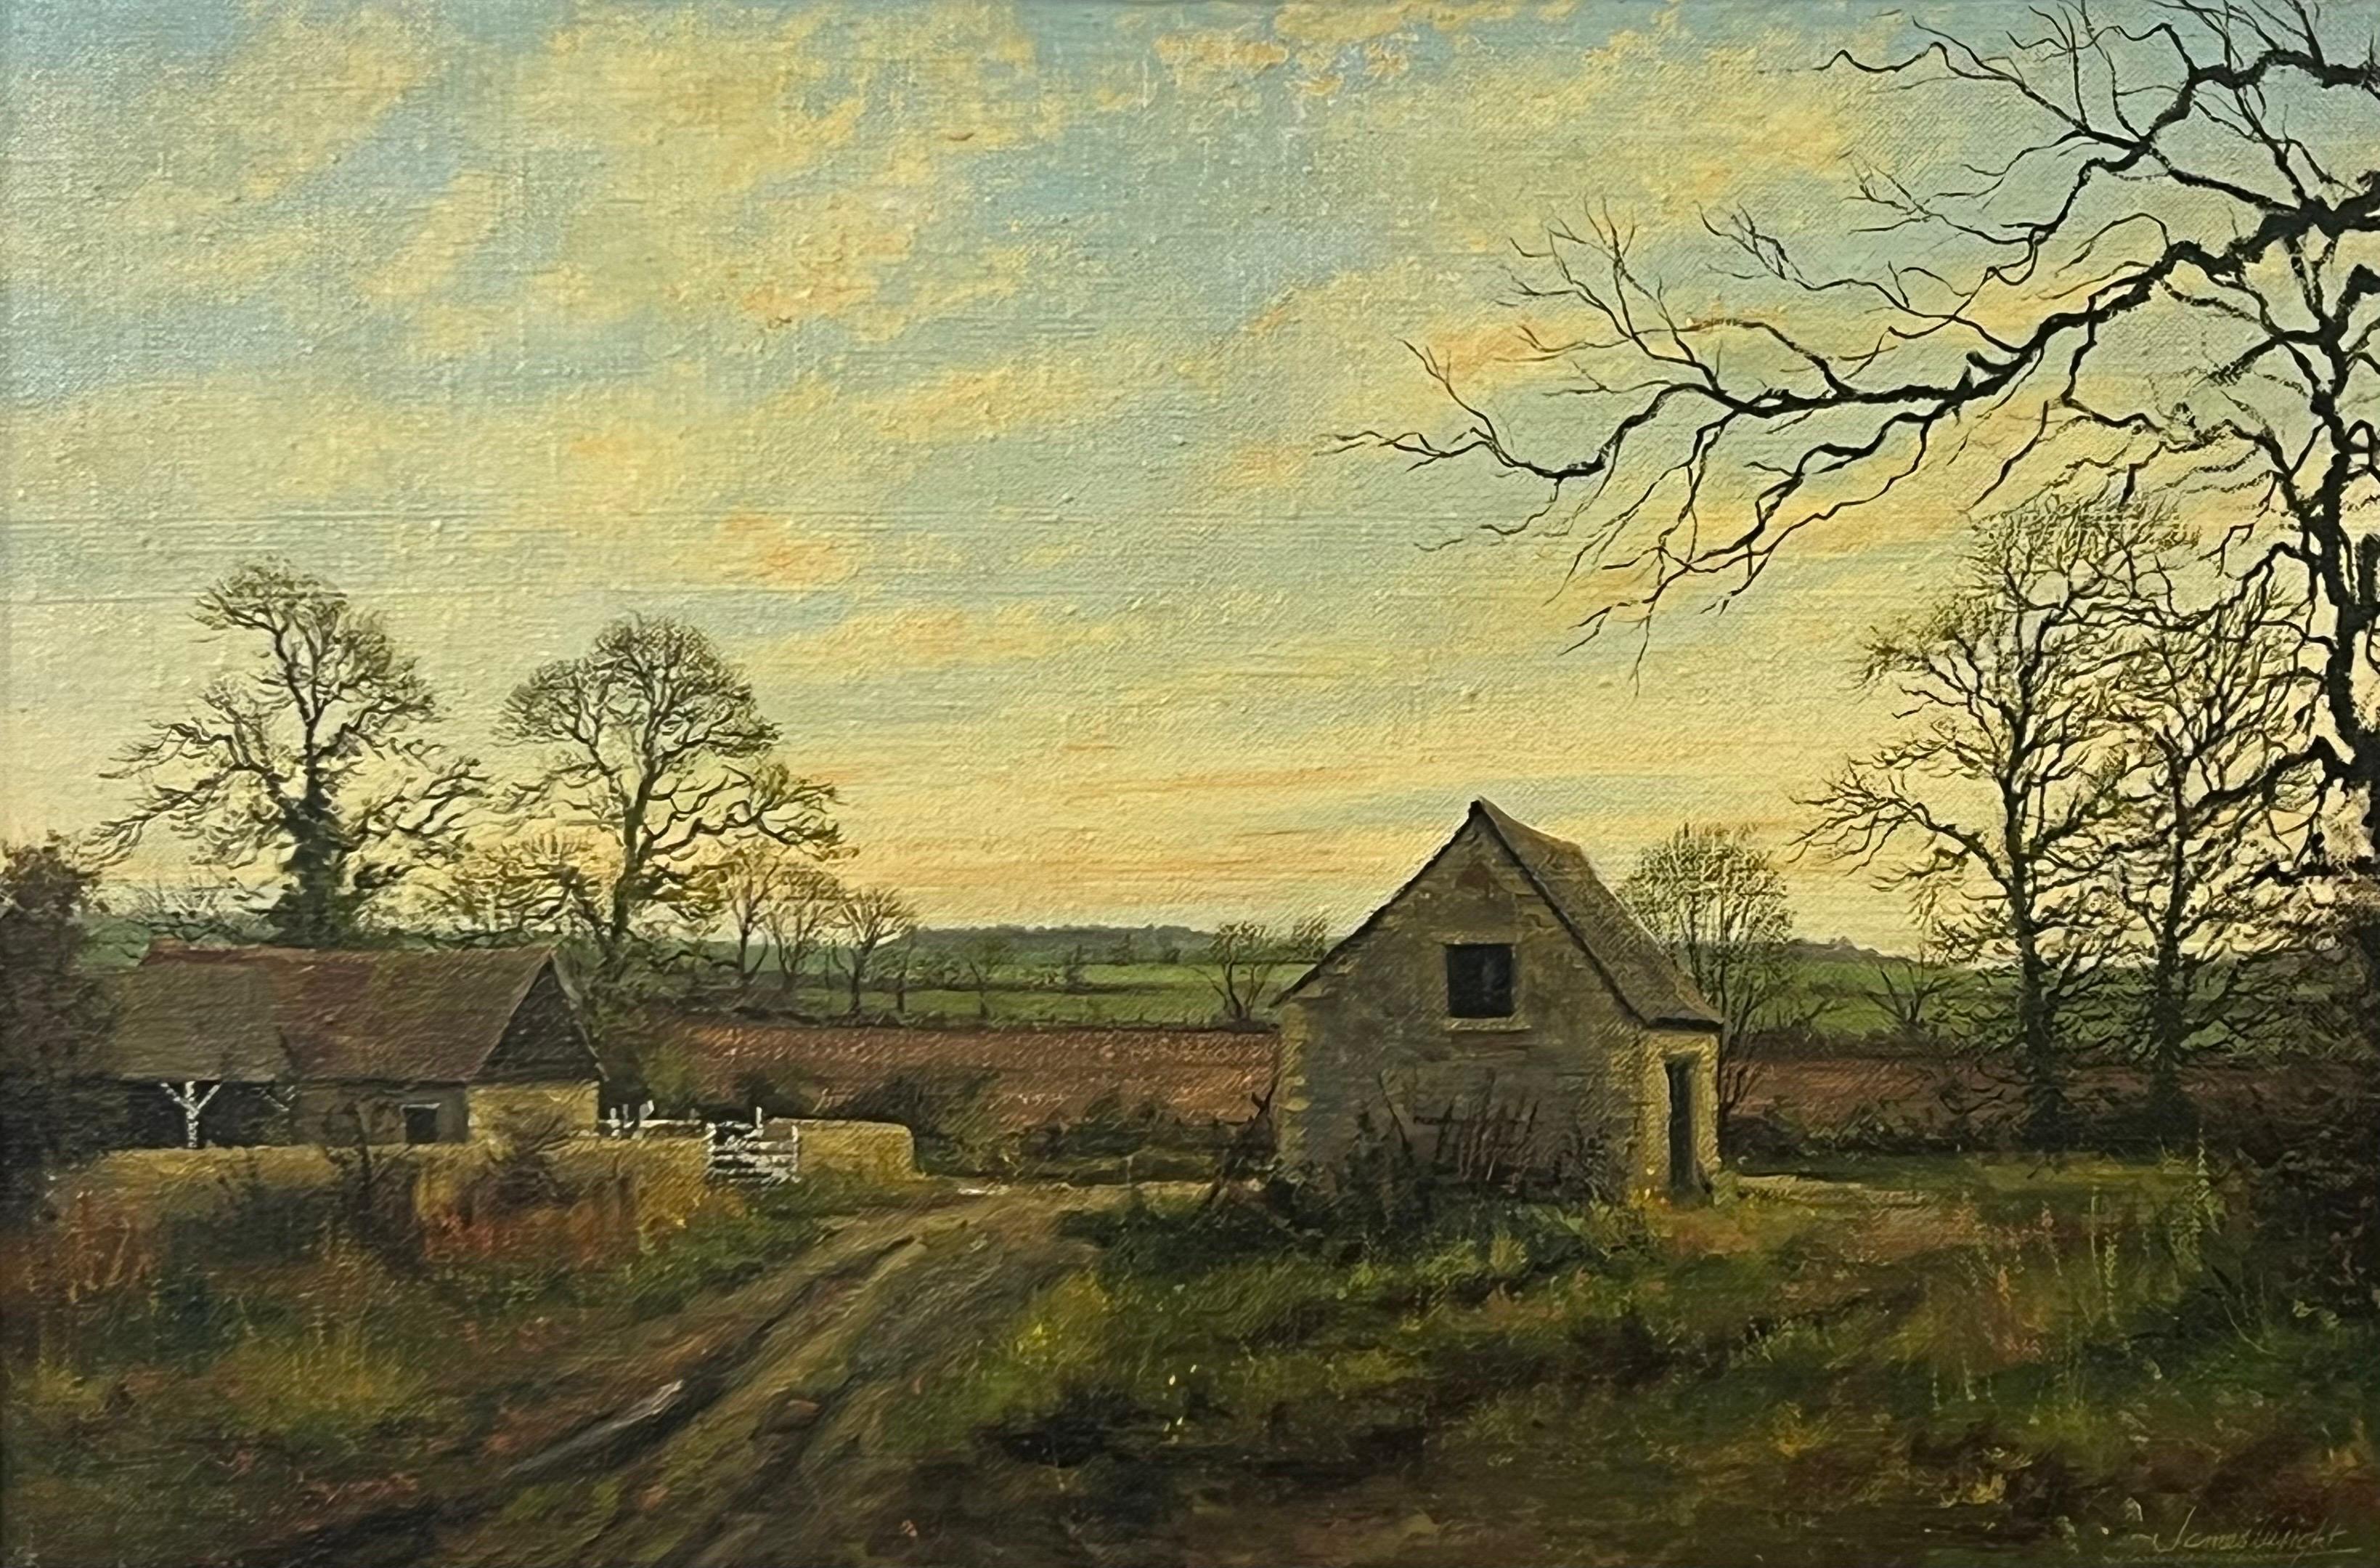 Old Barn Scene of a Farm in the English Countryside des britischen Landschaftskünstlers – Painting von James Wright